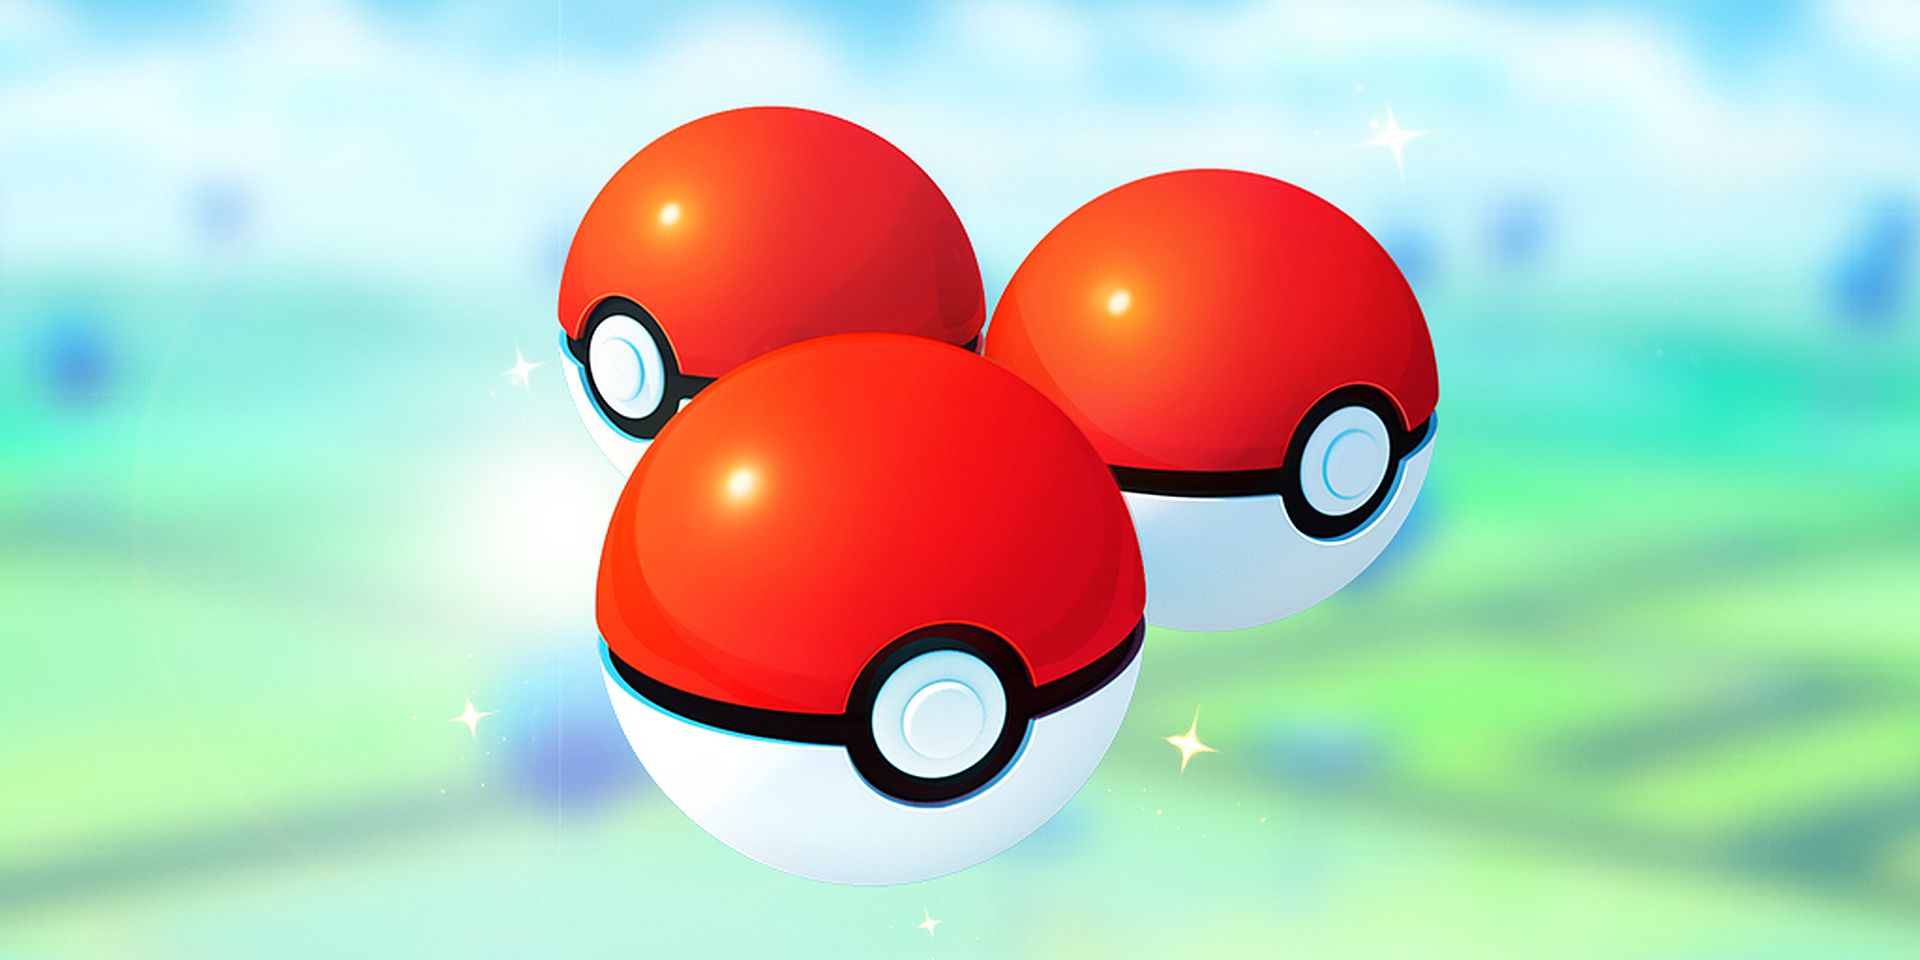 Doskonała okazja, aby doświadczyć prima aprilisowego wydarzenia Pokémon GO